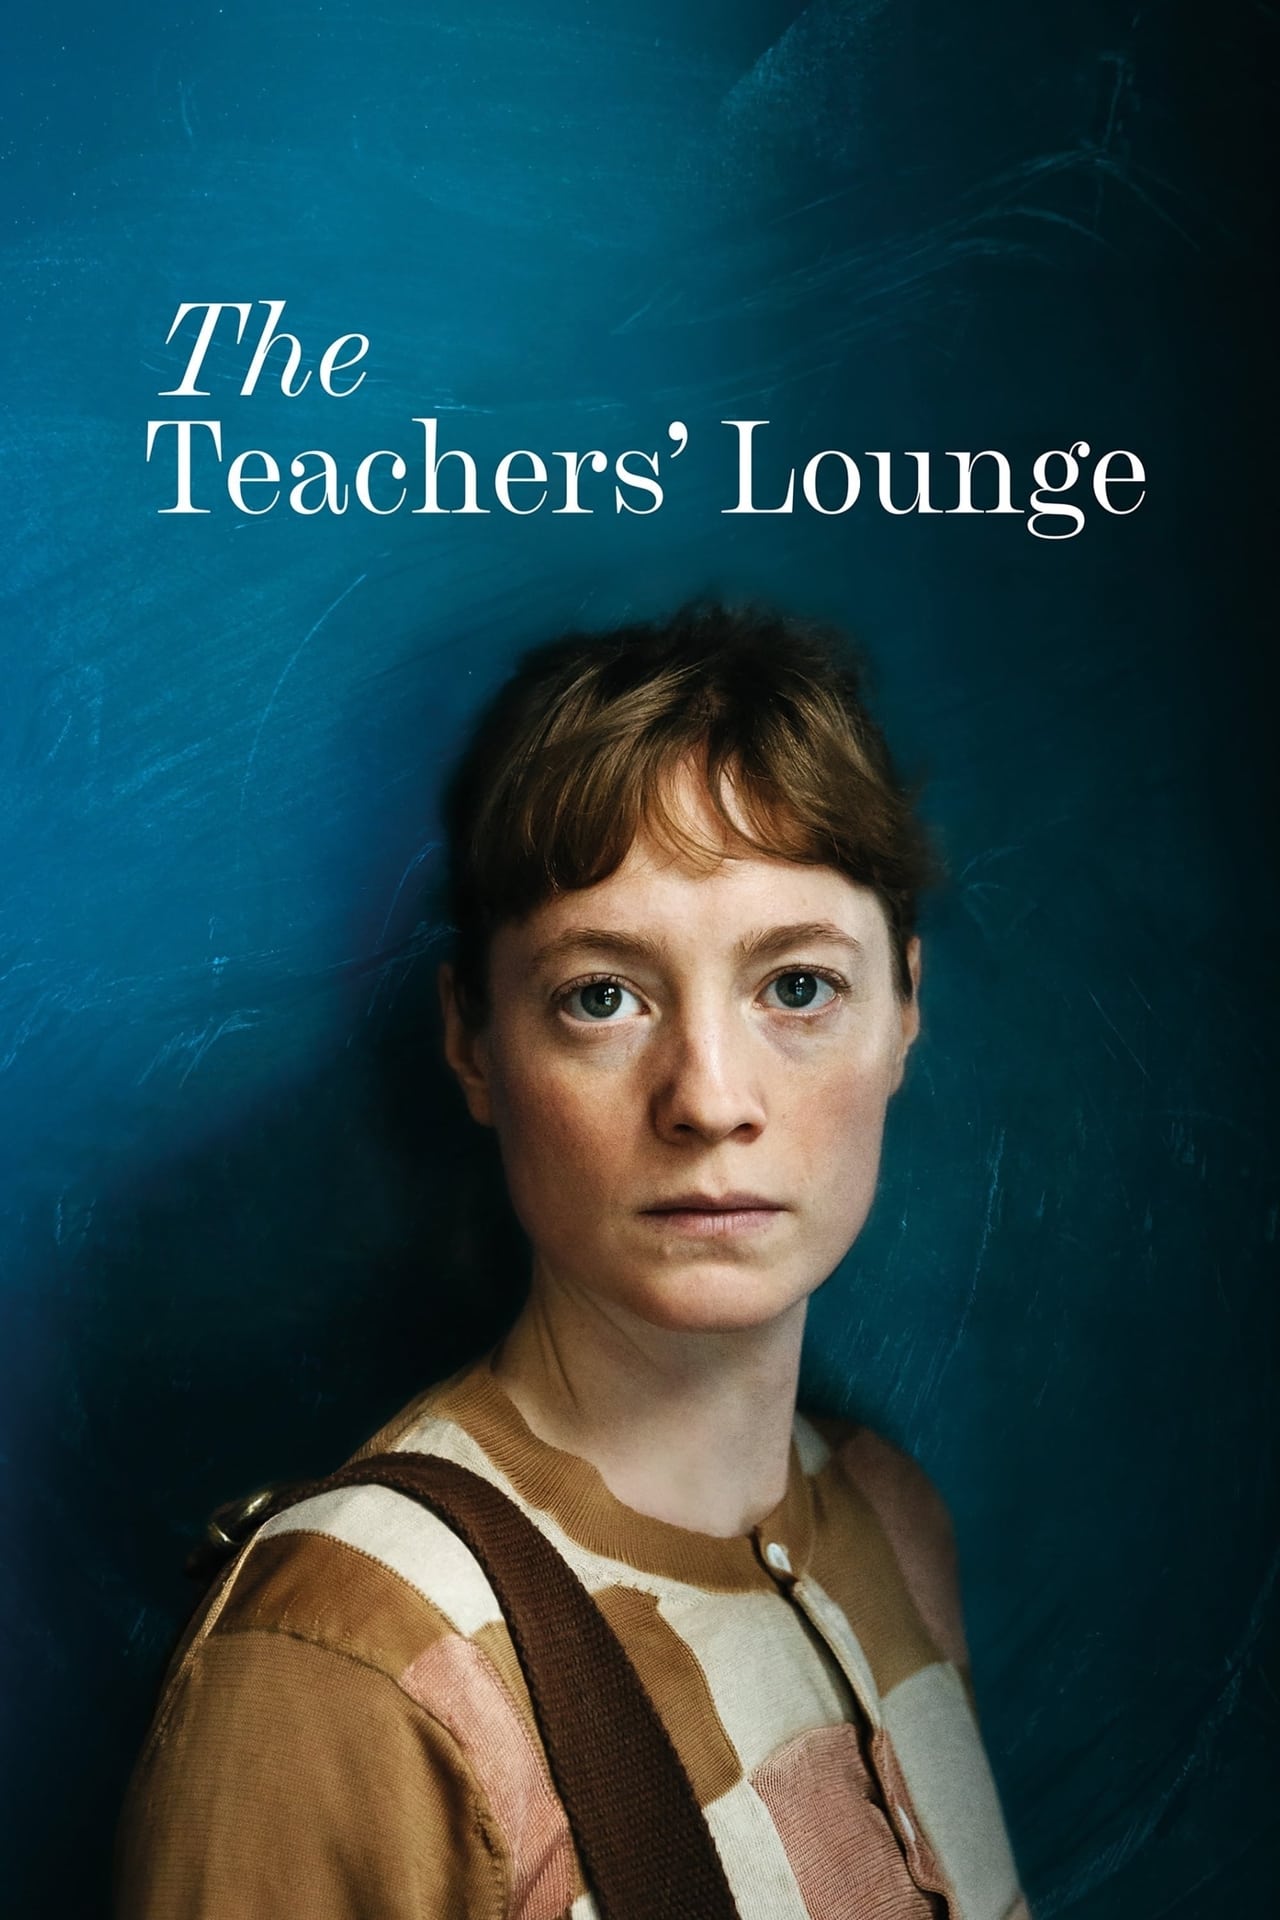 The Teachers' Lounge on Netflix